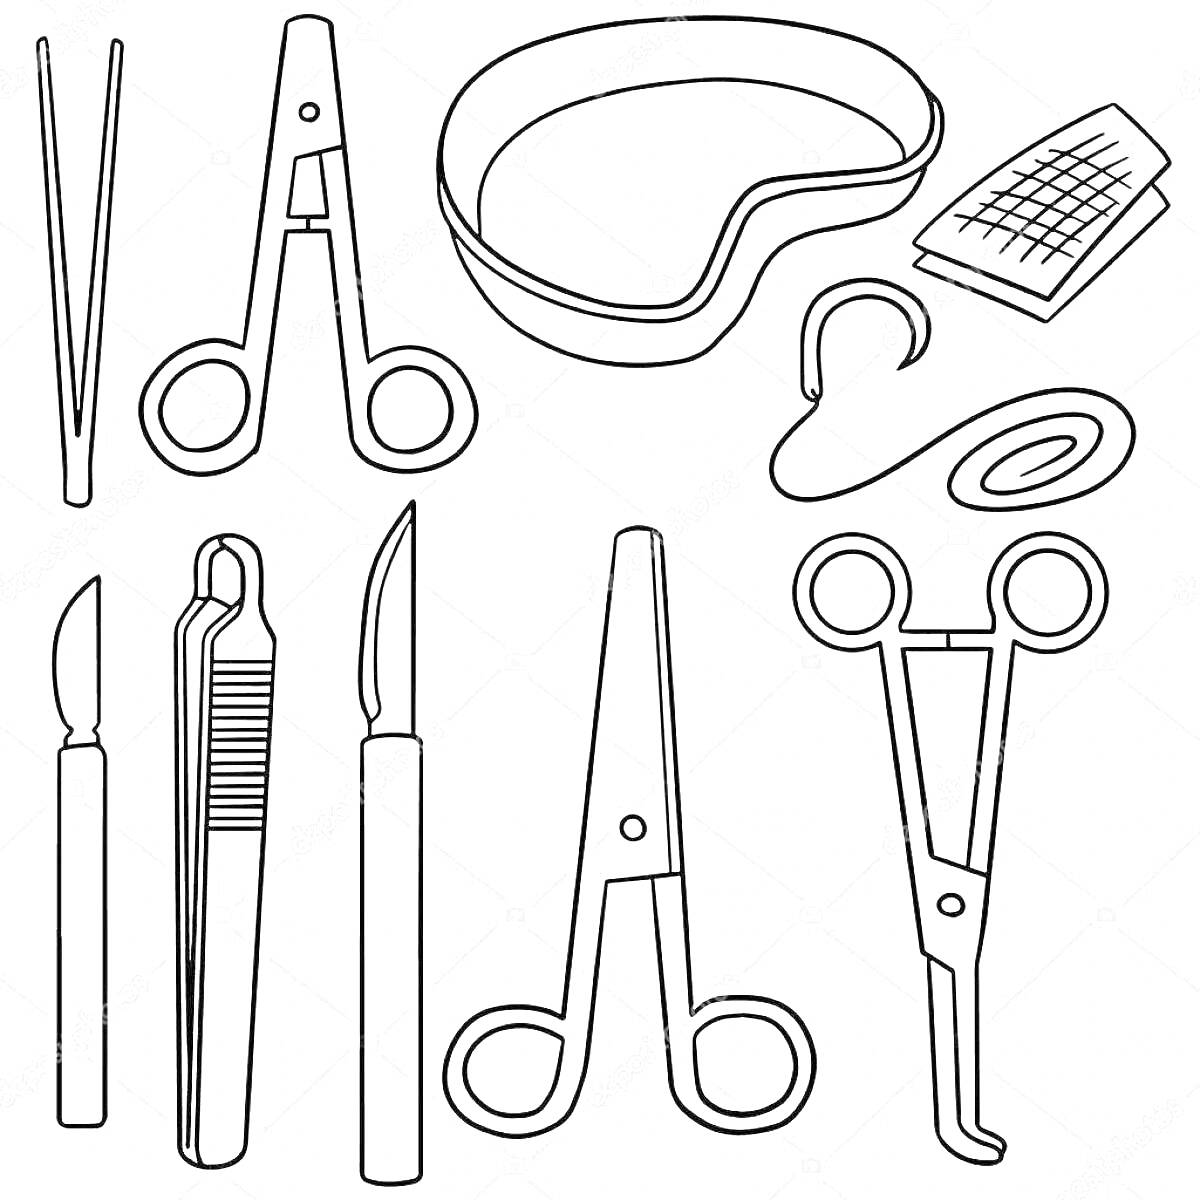 Раскраска Медицинские инструменты для детей: пинцет, ножницы, лоток для отходов в форме почки, медицинские салфетки, стетоскоп, бинт, скальпель, зажимы